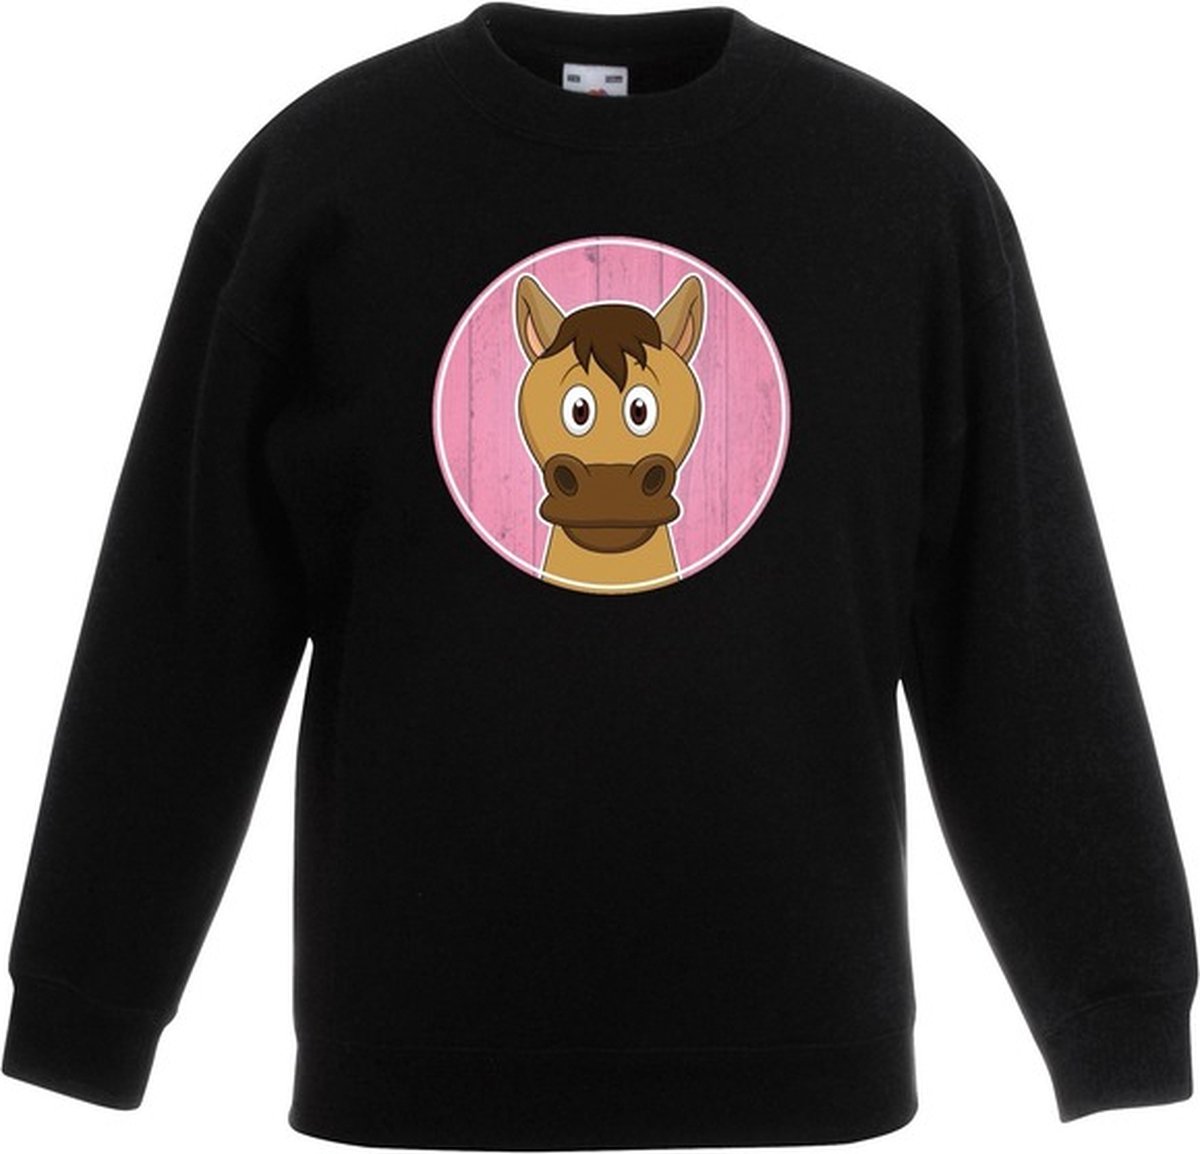 Kinder sweater zwart met vrolijke paard print - paarden trui -  kinderkleding / kleding... | bol.com